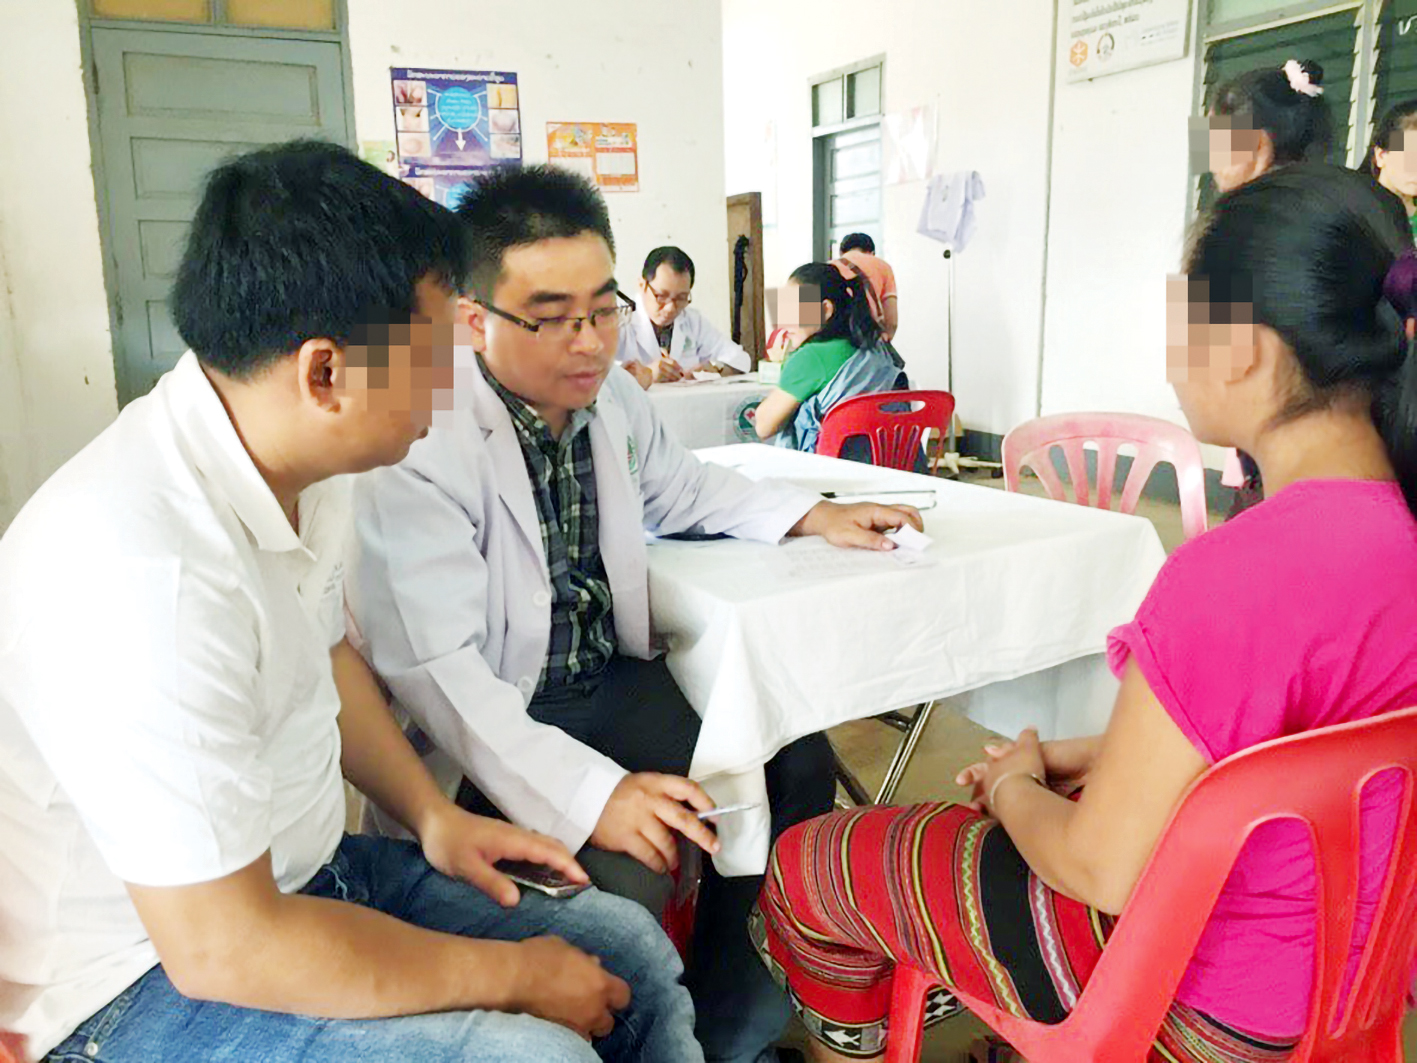 Bác sĩ Nguyễn Thanh Sang đang tư vấn về vật lý trị liệu cho một bệnh nhân - ẢNH: S.N. 